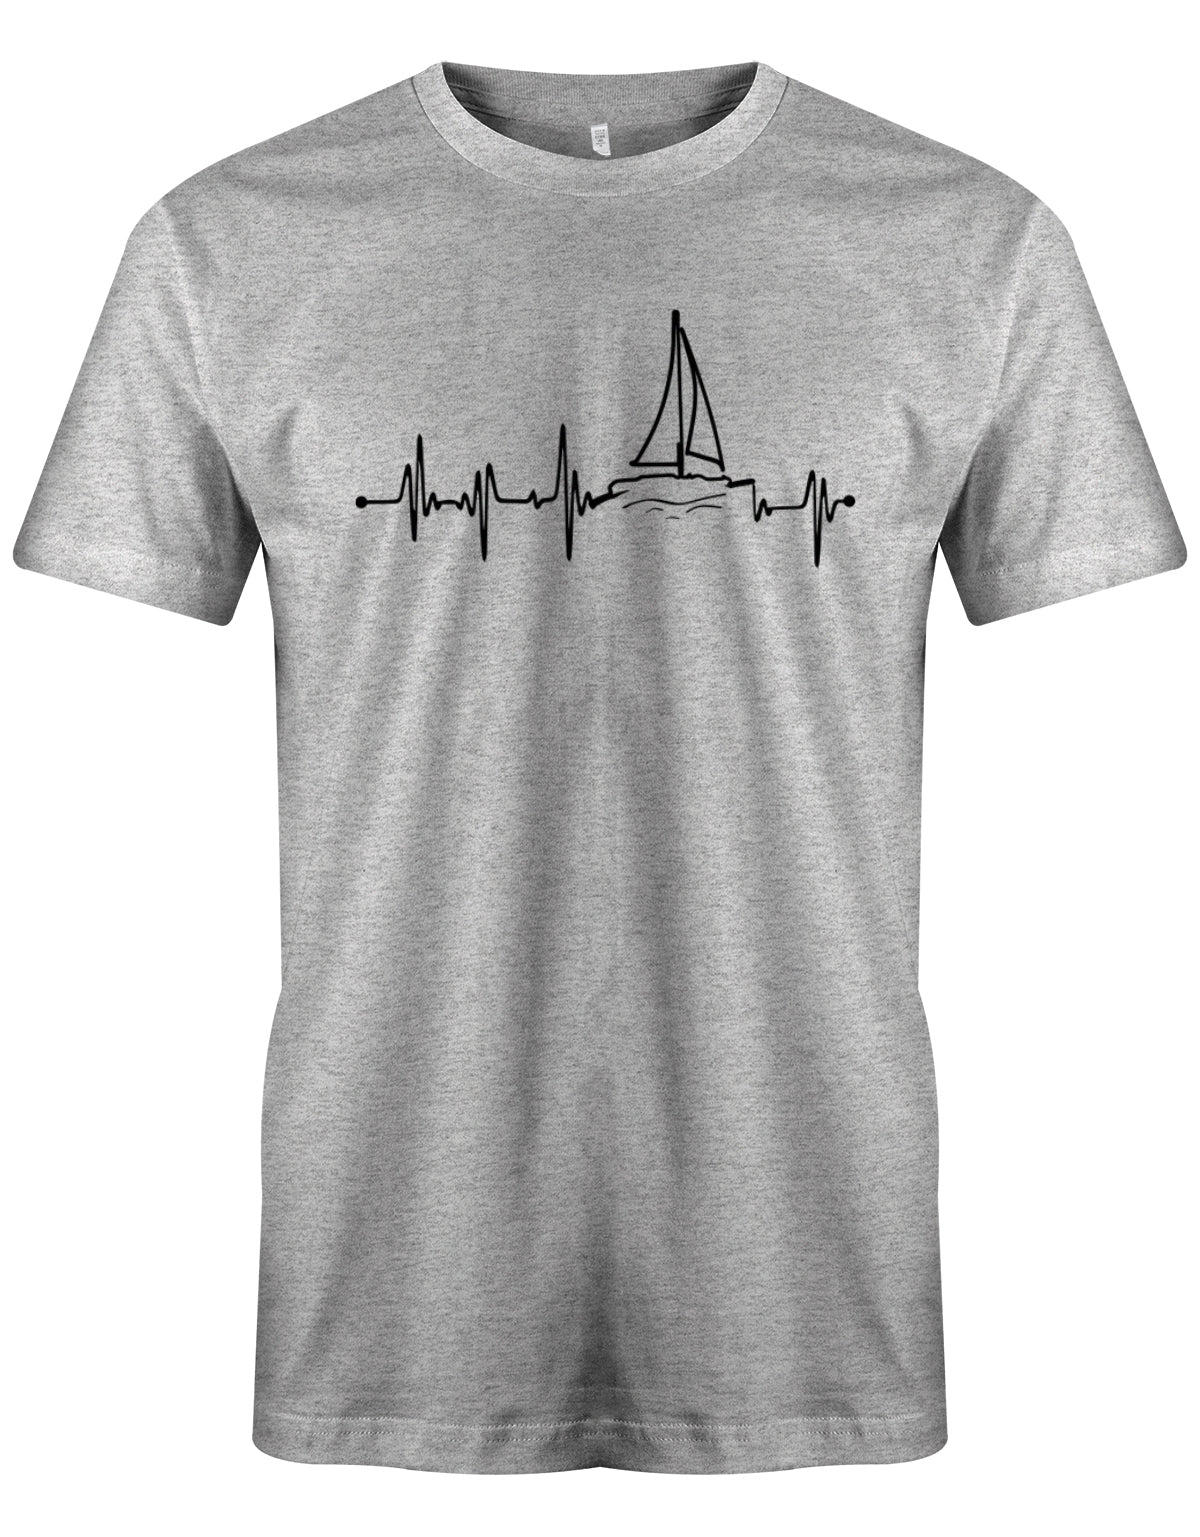 Das Segler t-shirt bedruckt mit "Herzschlag Frequenz mit einem Segelboot - Das Herz schlägt fürs Segeln". Grau